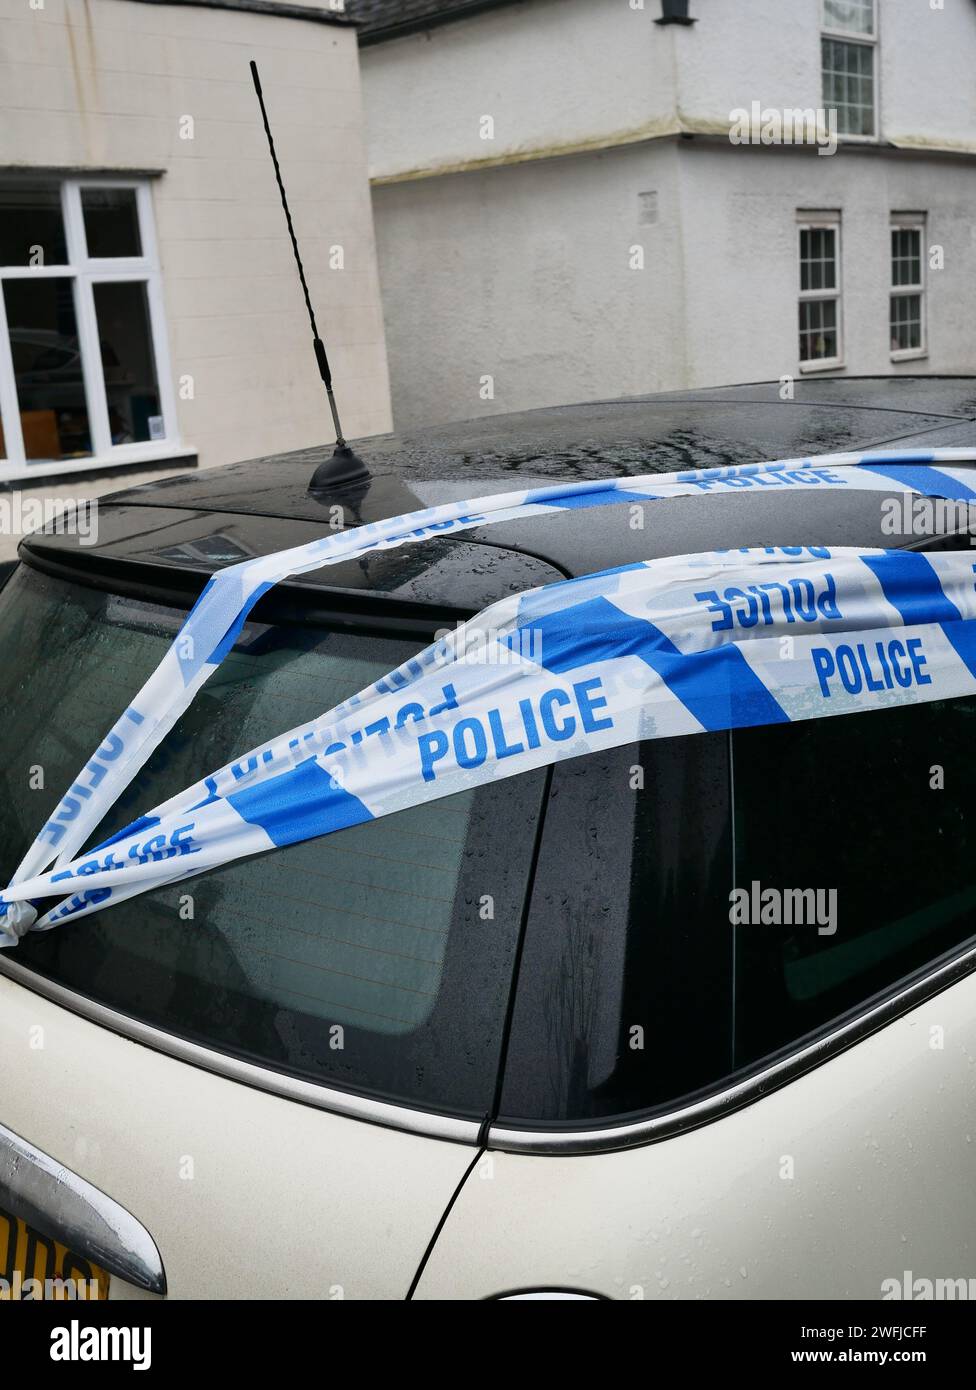 Police crime scene tape over a car Stock Photo